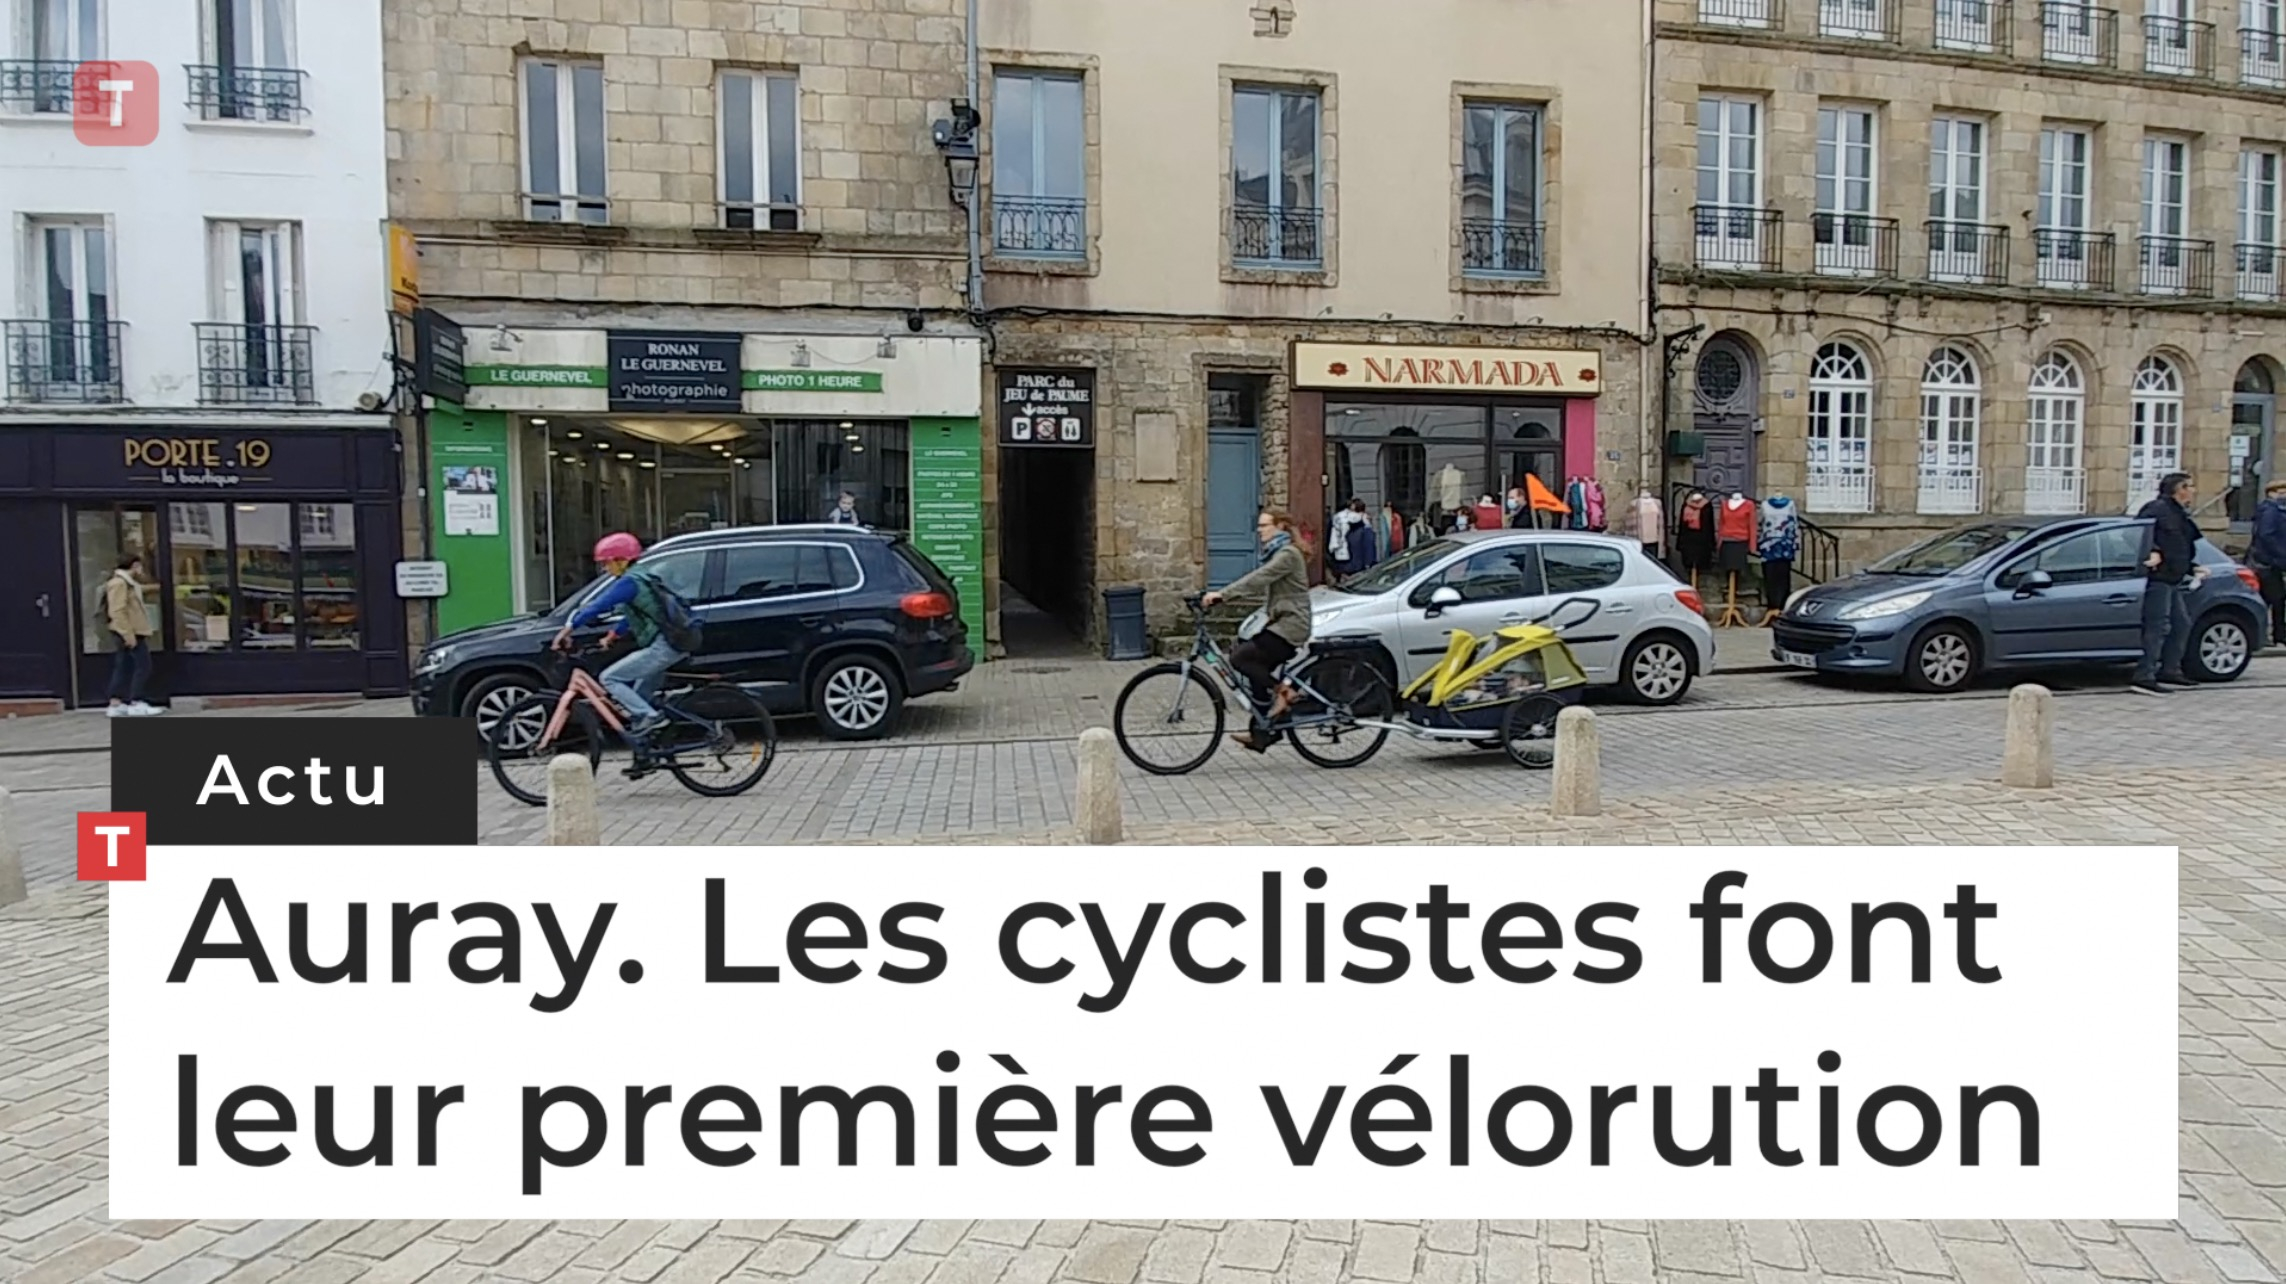 Auray. Les cyclistes font leur première vélorution  (Le Télégramme)